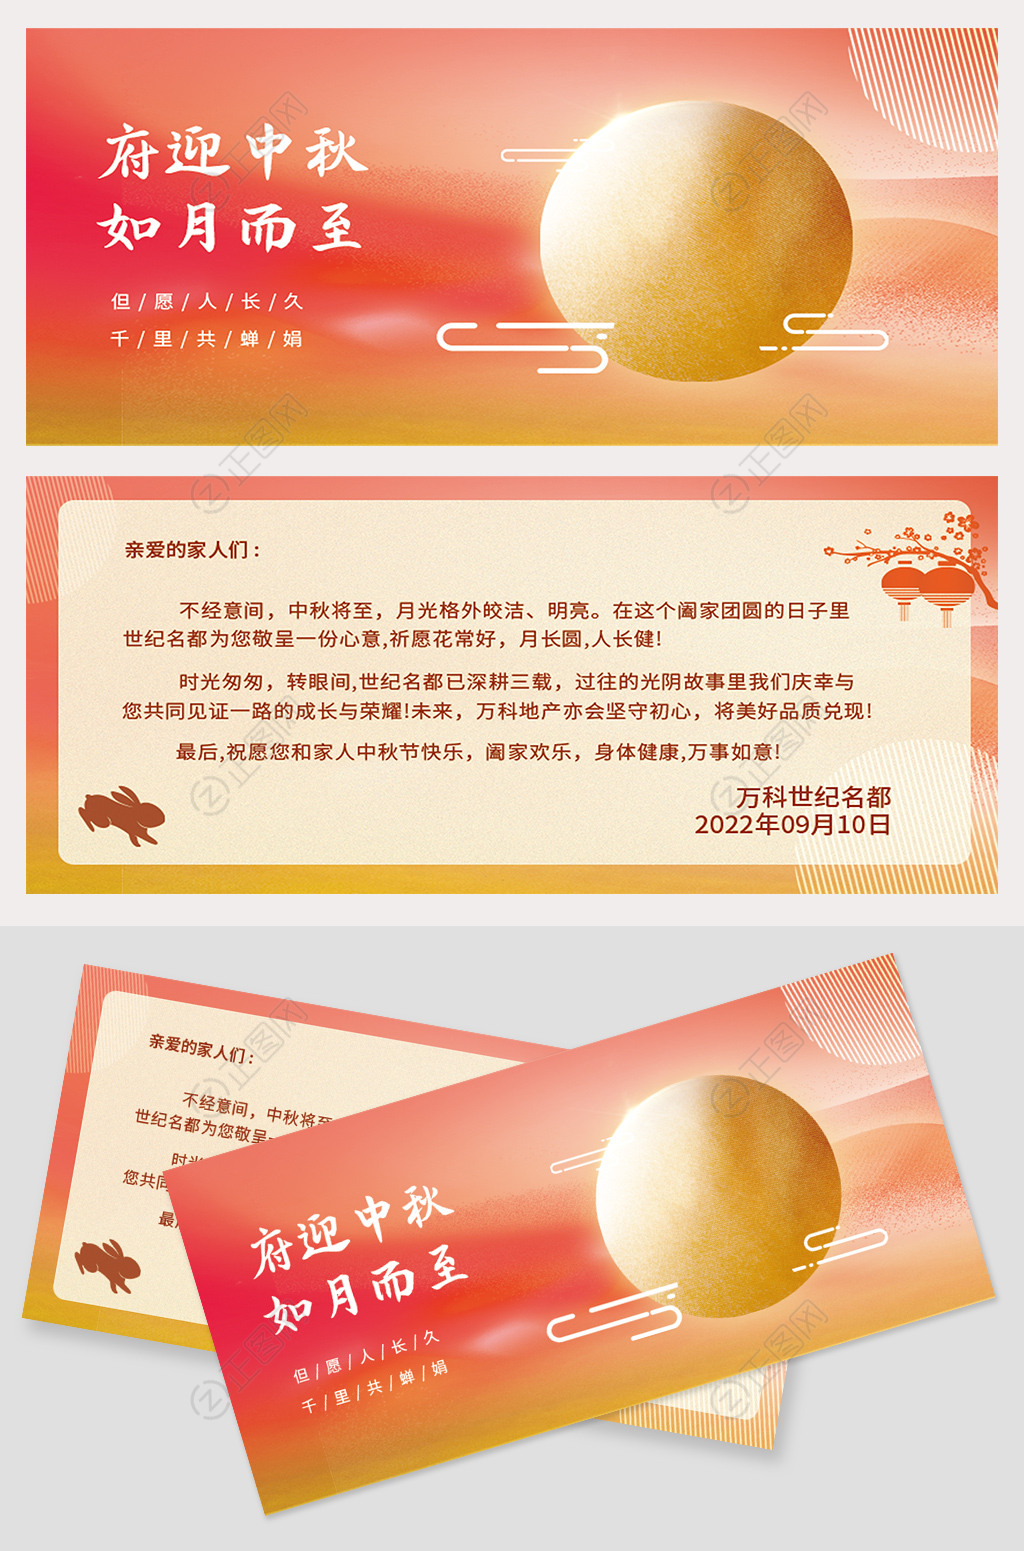 中秋节贺卡设计模板素材由正图网广告设计设计师chunchun上传,本设计